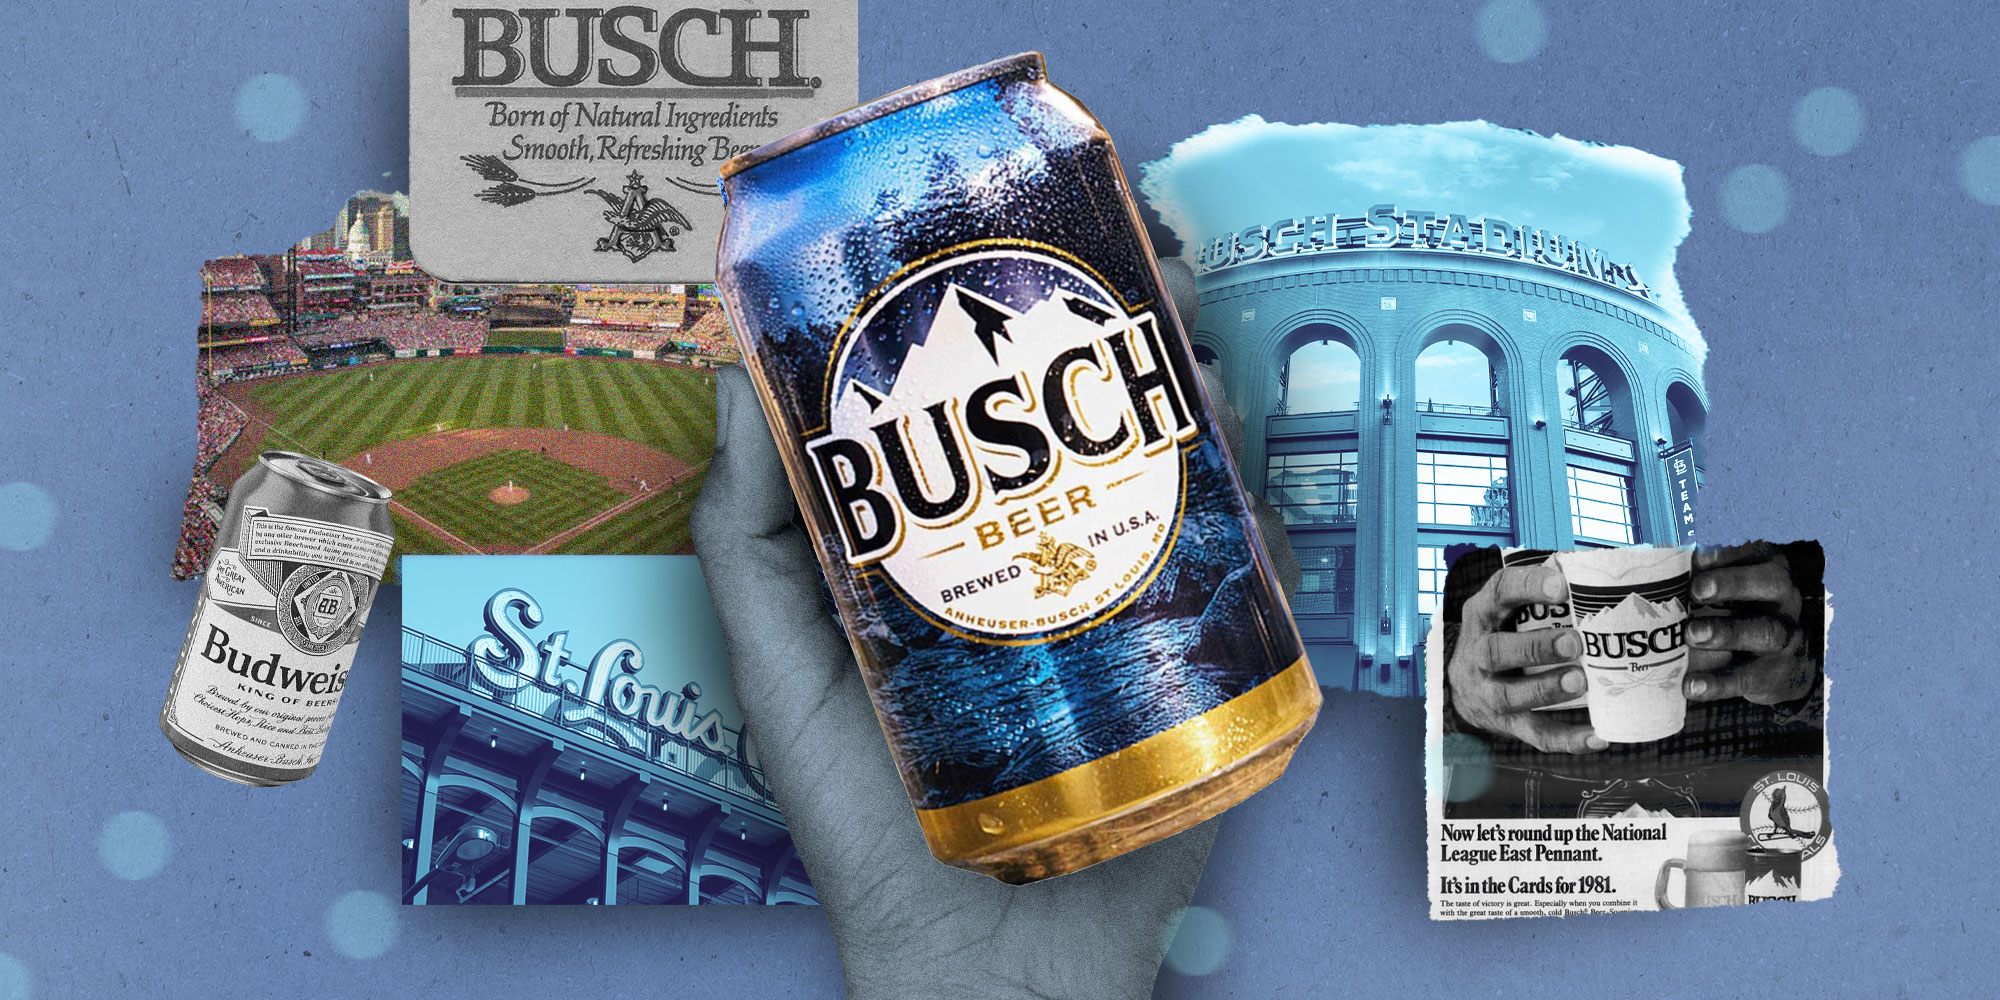 Busch Stadium - Wikipedia